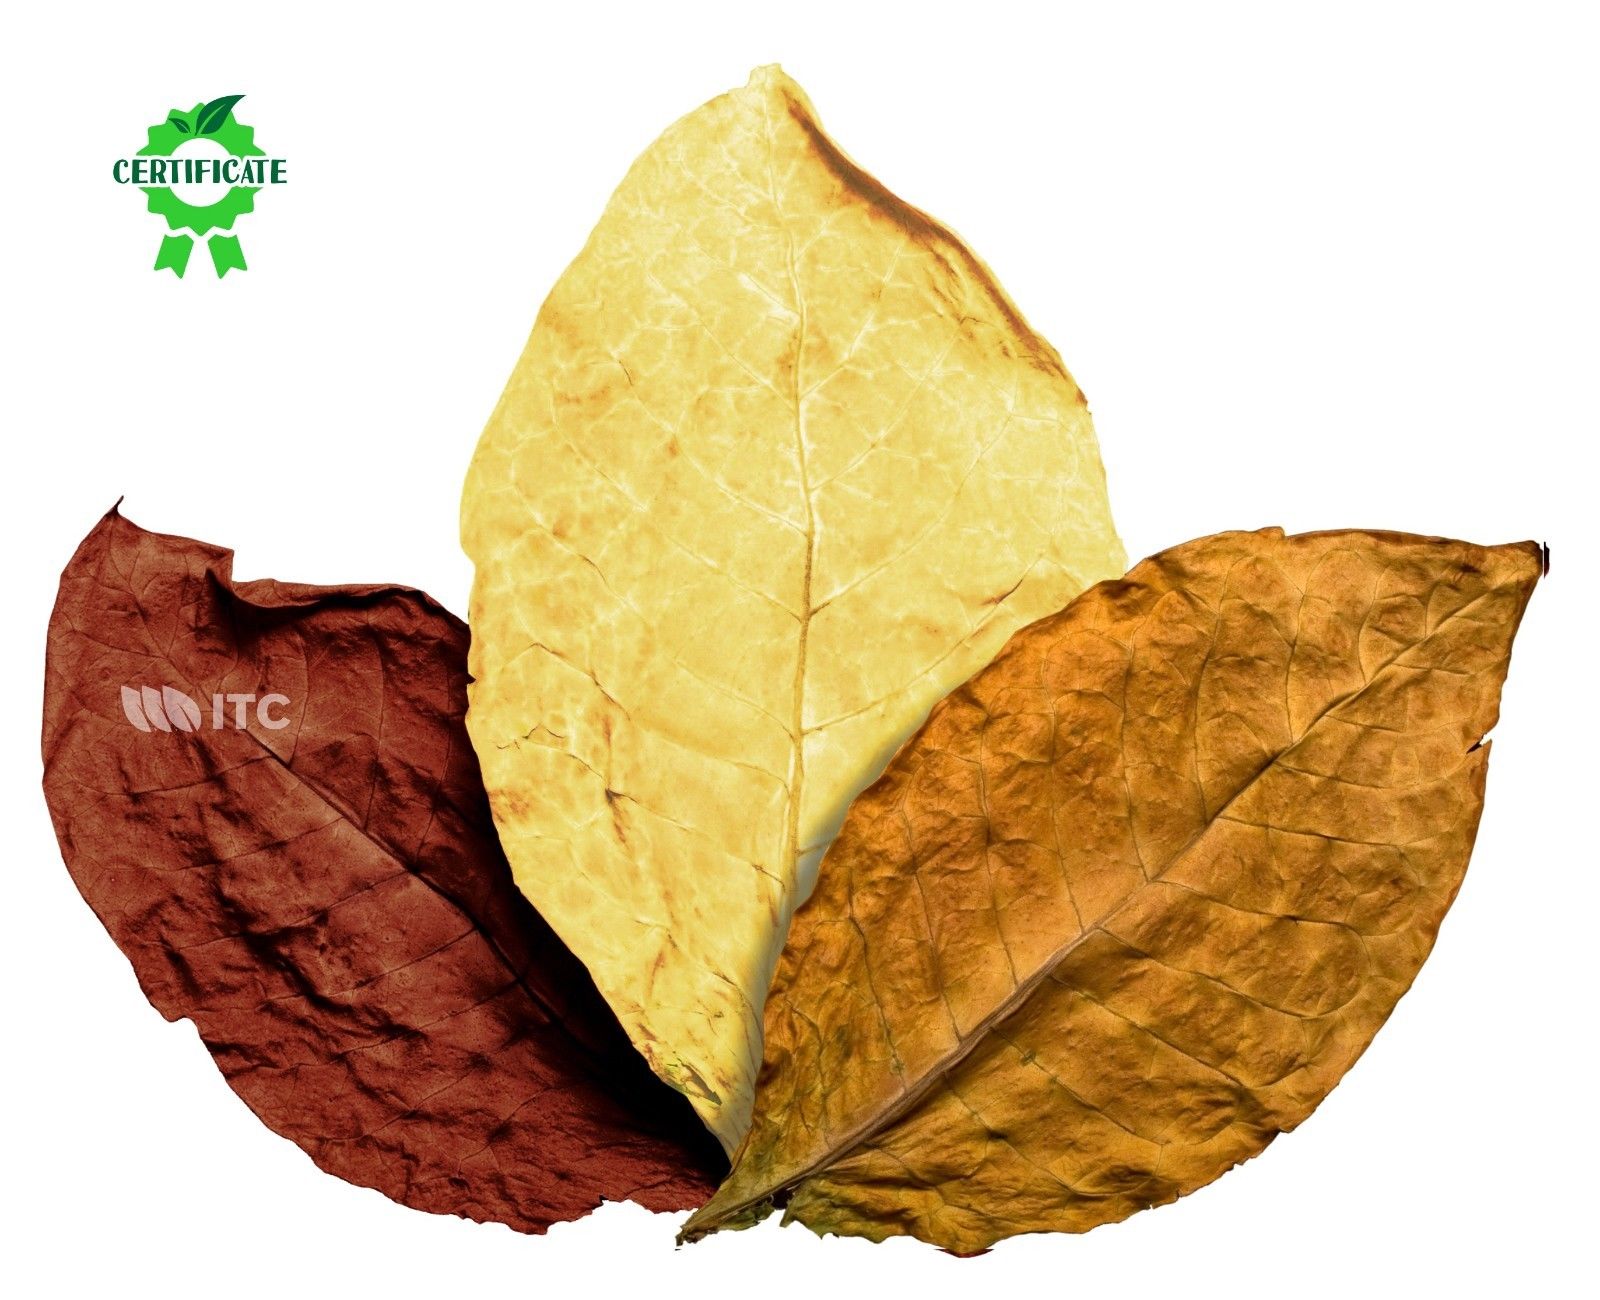 Burley Blätter Rohtabak Naturtabak Tabakblätter Duft /& Deko